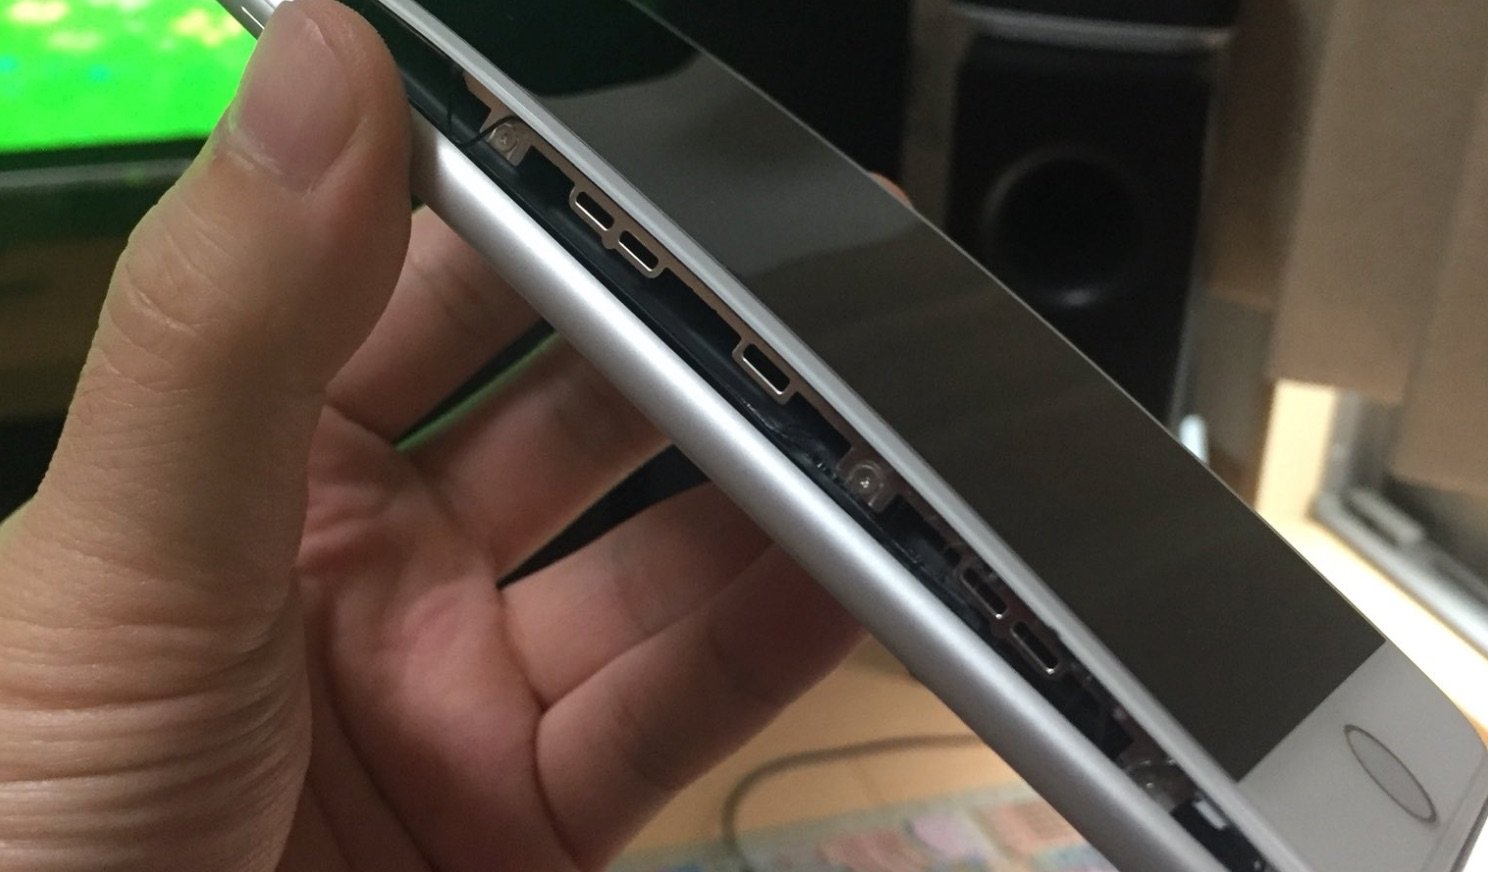 Apple iPhone 8 Plus: Mehr Meldungen über aufblähendes Display 5